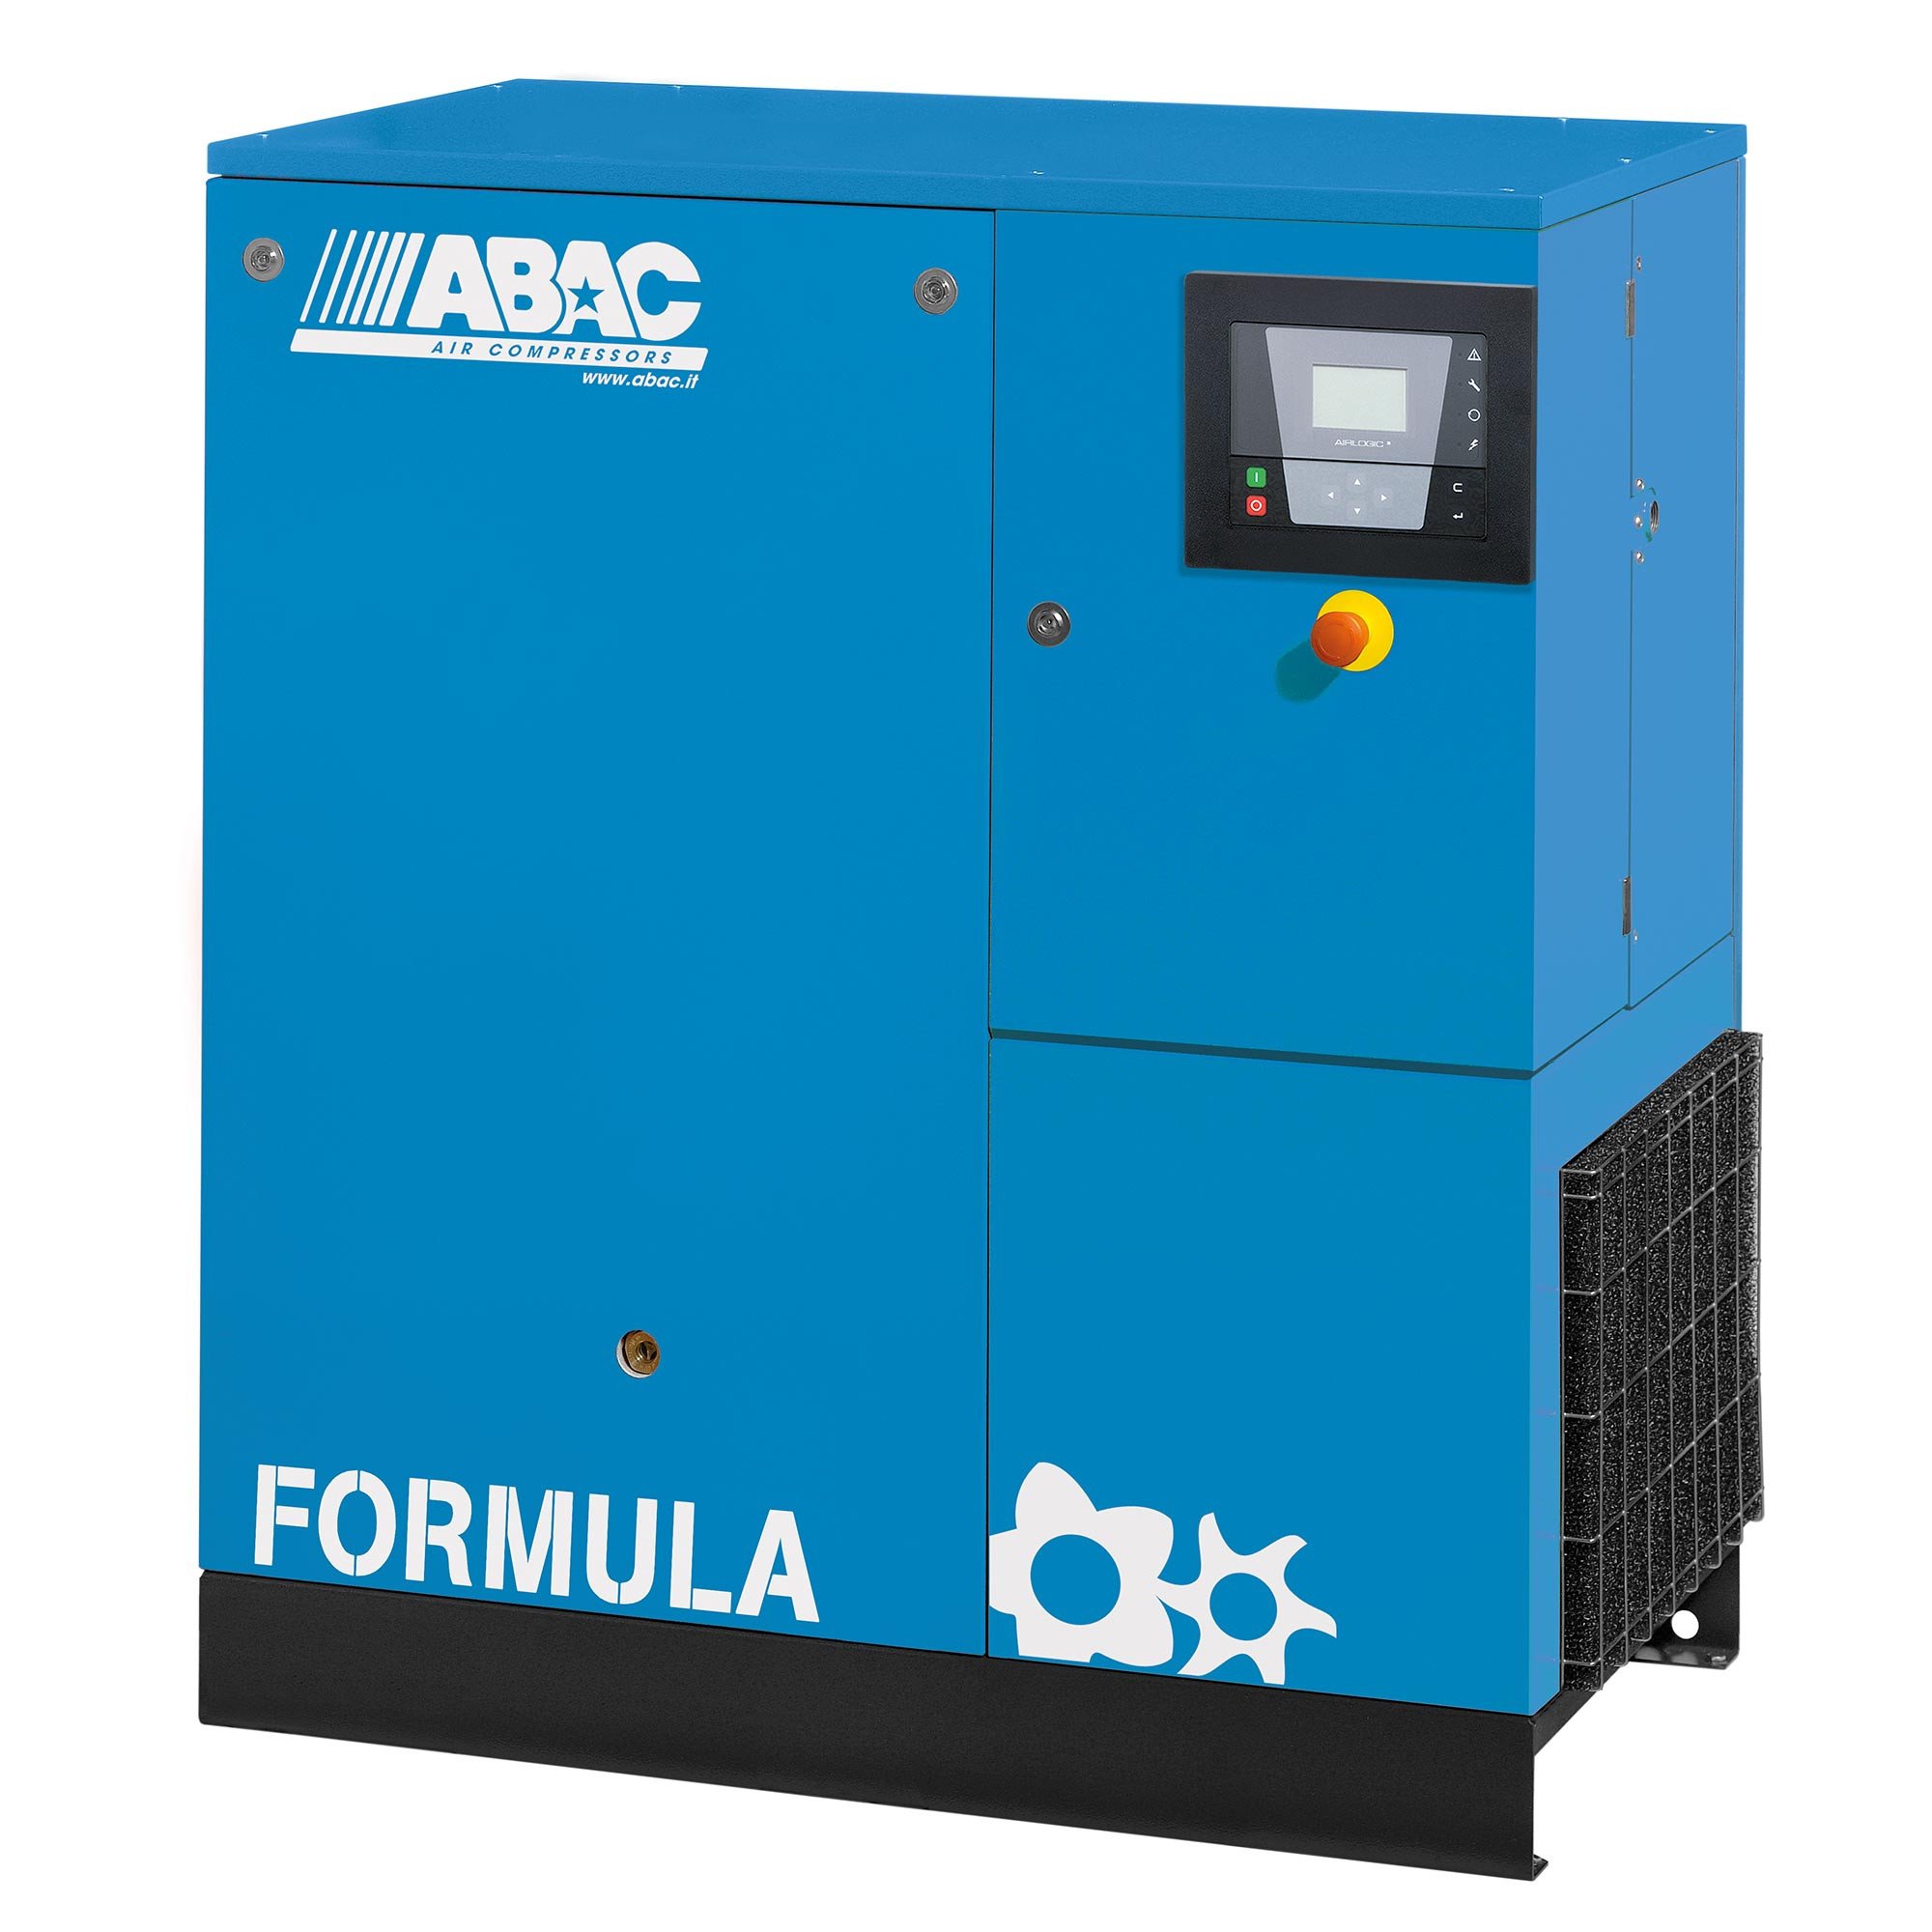 ABAC公式E 11千瓦固定速度旋转螺杆空气压缩机与干燥机基本单位